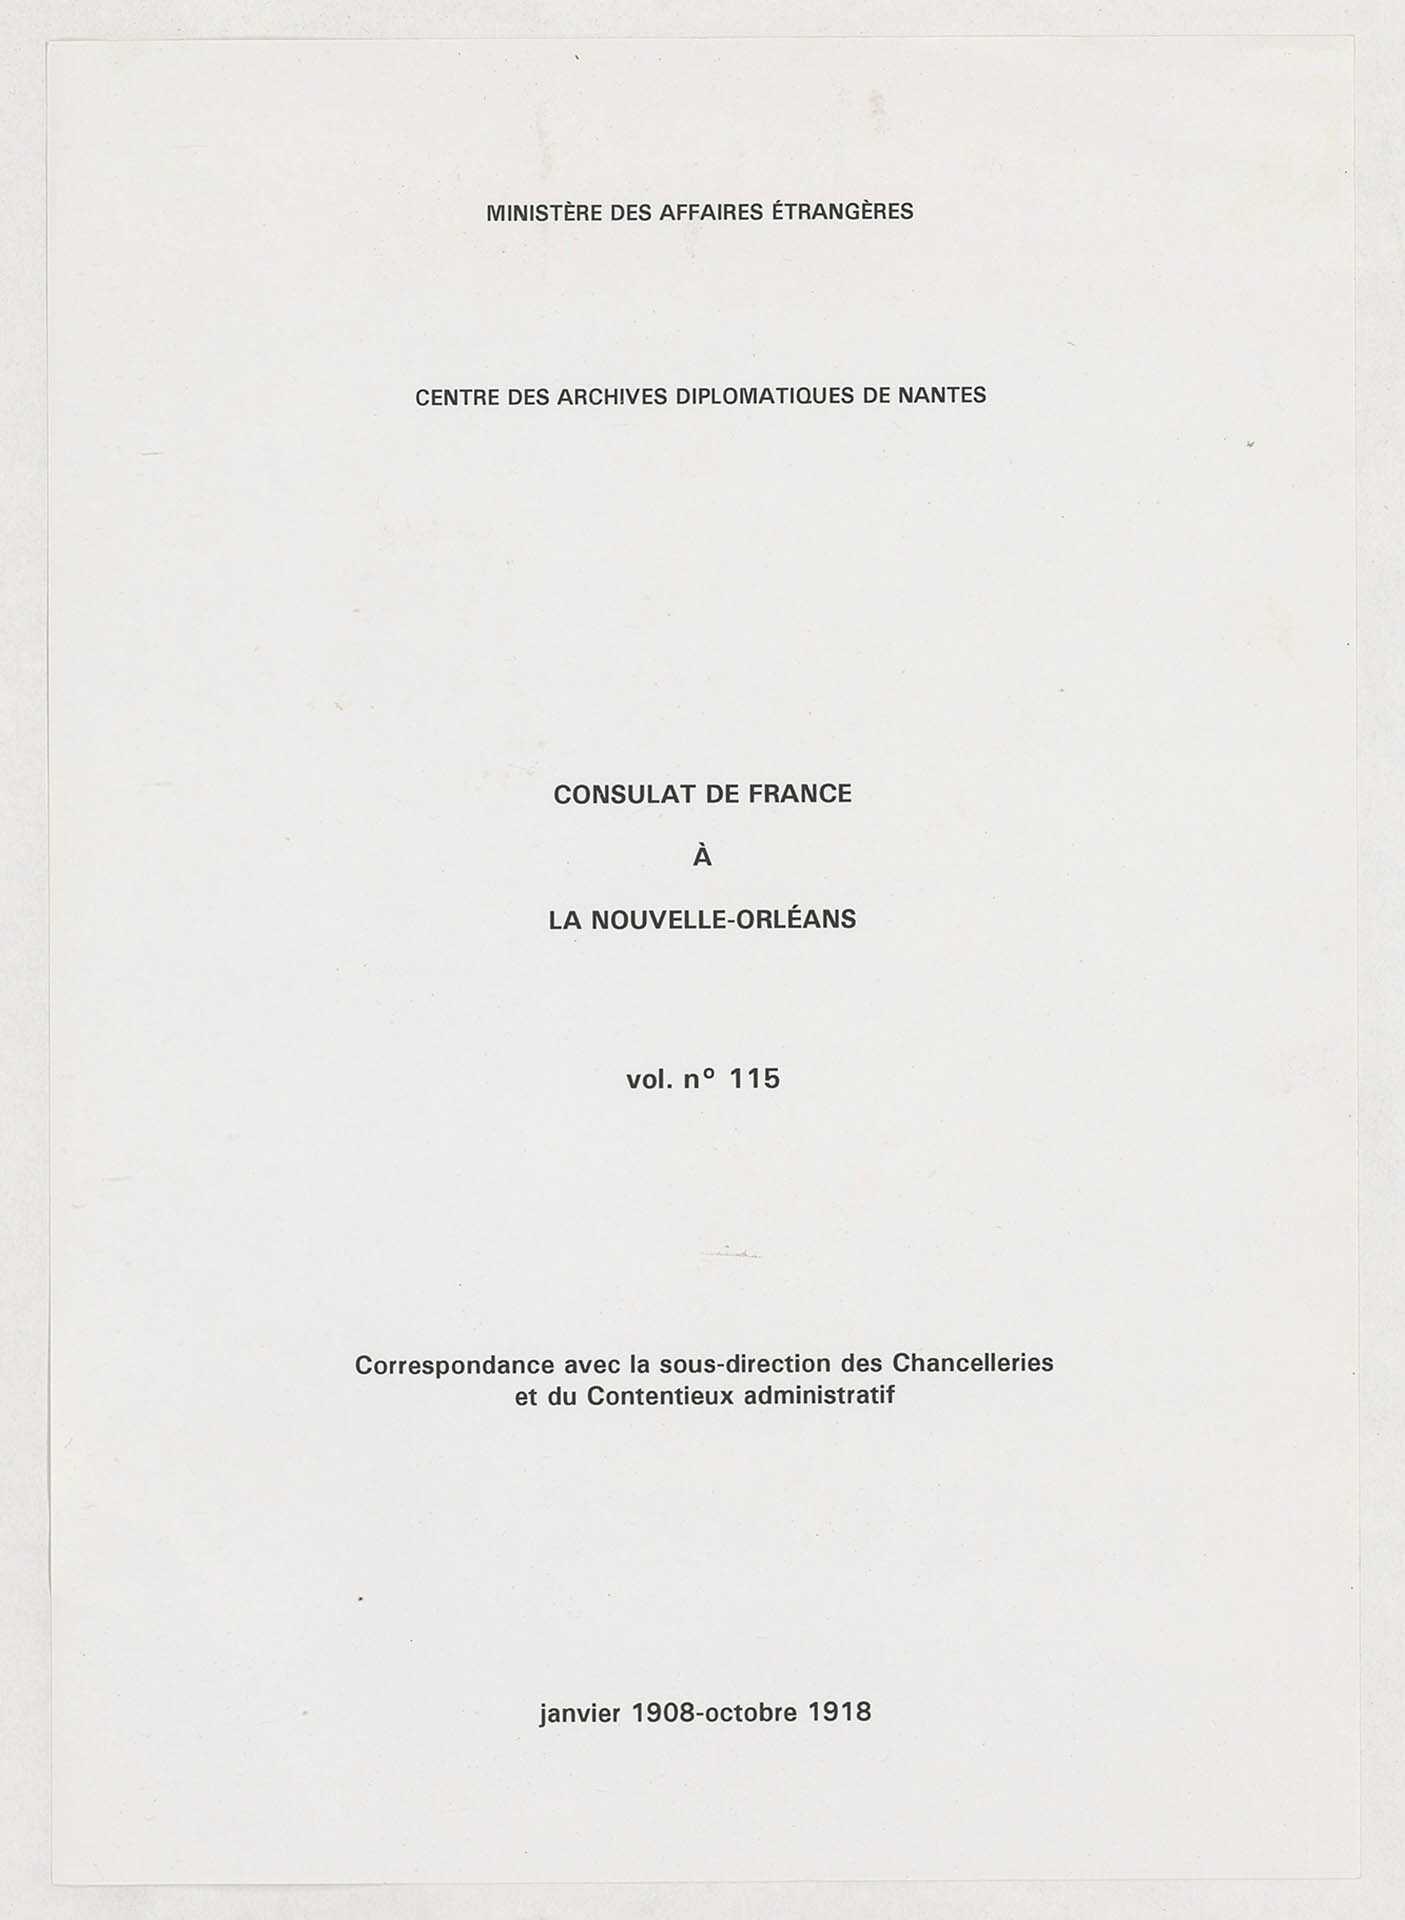 Correspondance avec la sous-direction des Chancelleries et du Contentieux (janvier 1908-octobre 1918).